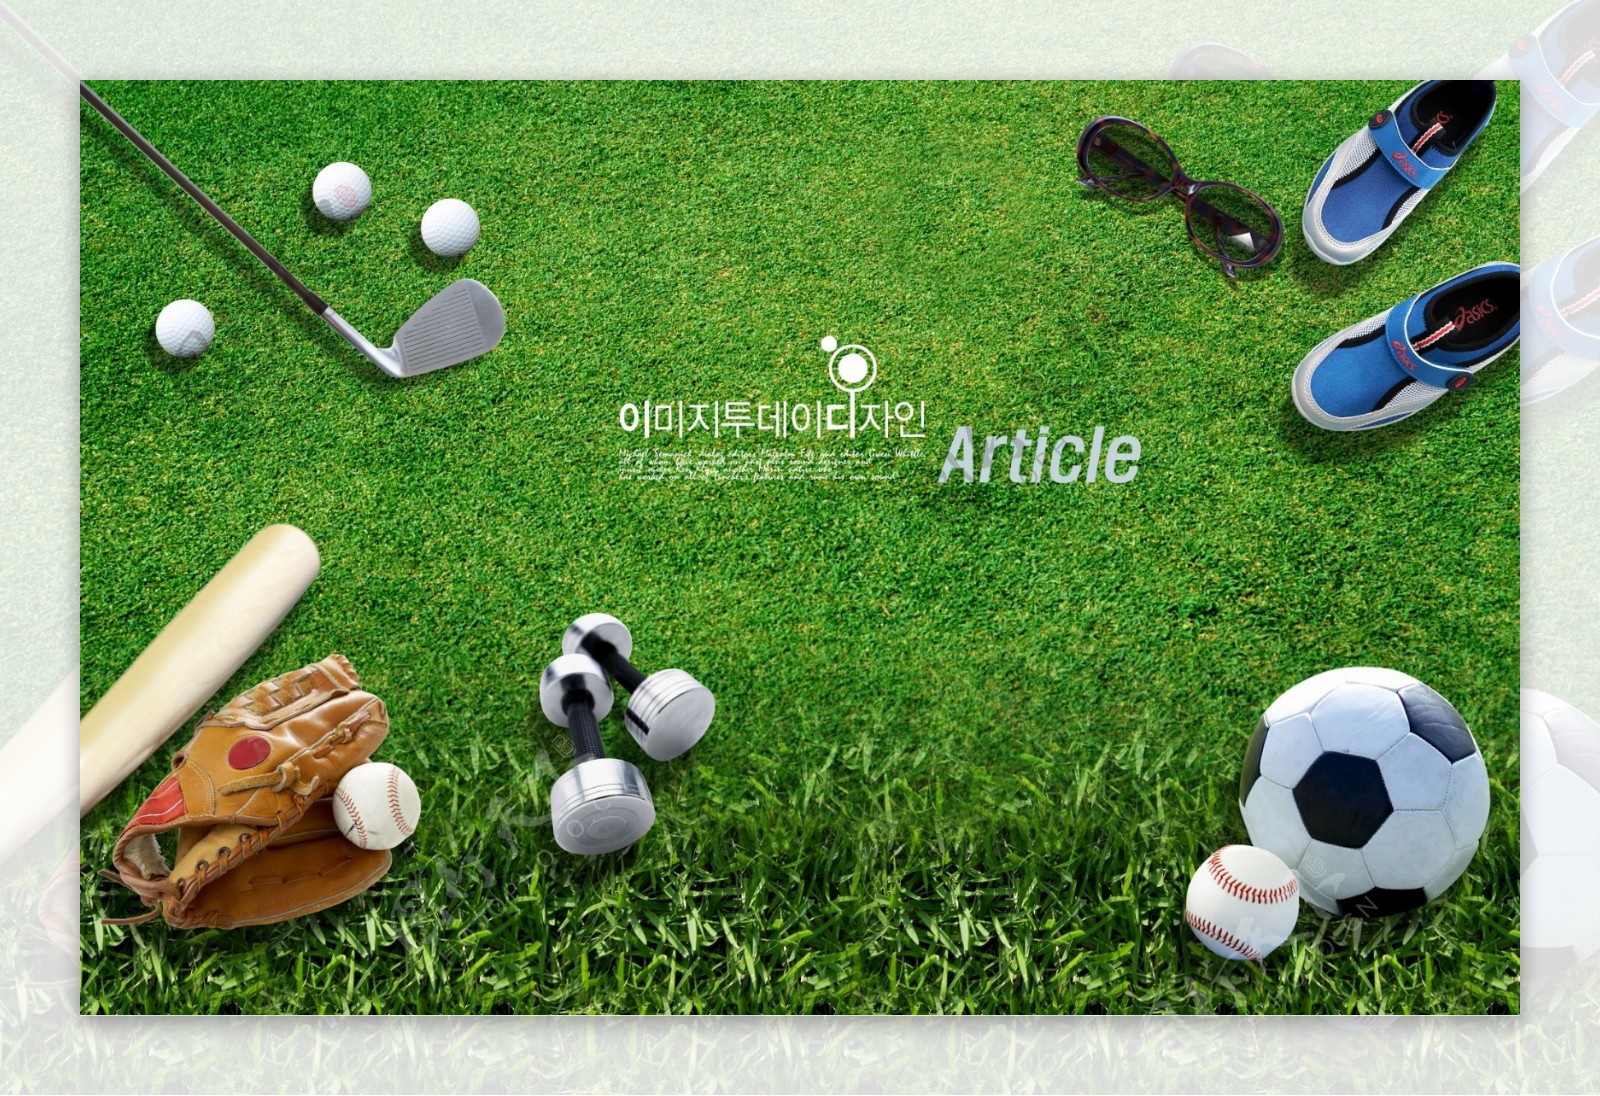 打高尔夫高尔夫球球杆足球棒球网球鞋子运动鞋草地草坪日韩盛典